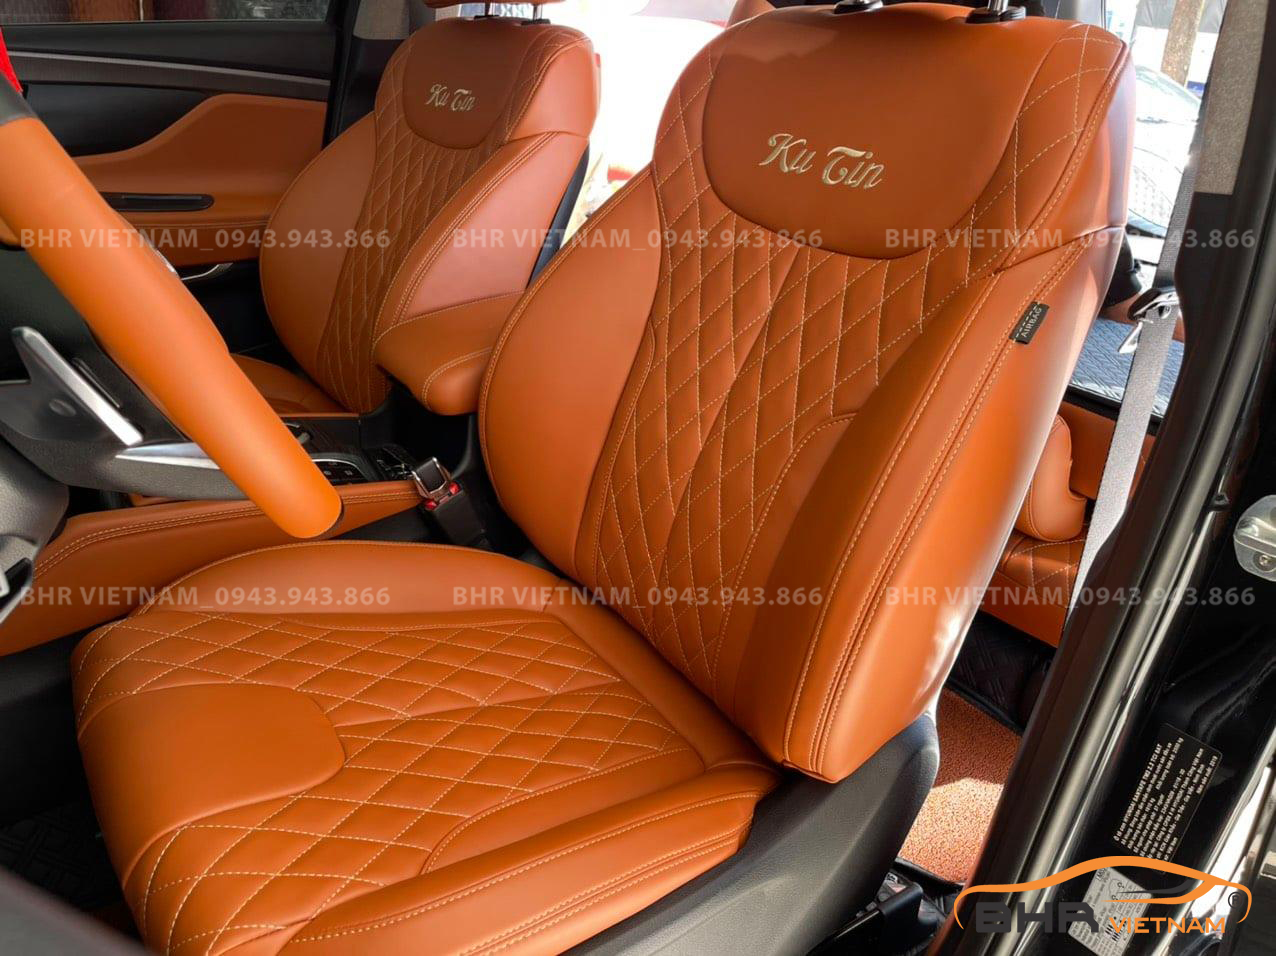 Đổi toàn bộ nội thất ô tô bằng bọc da phối màu cam, đen, sơn gỗ Hyundai Santafe